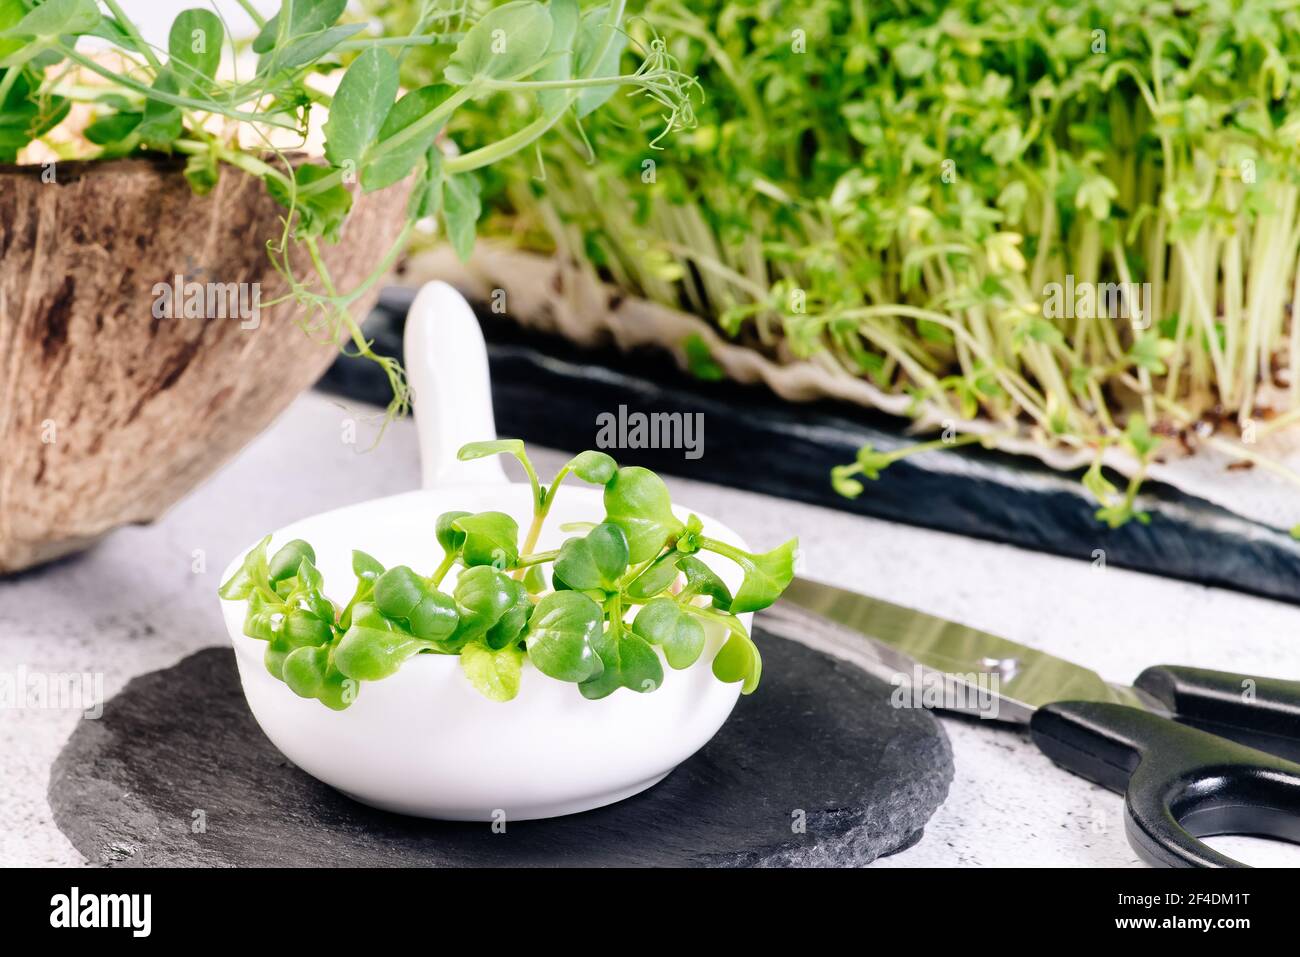 Assortiment de micro-légumes verts.Microverts.salade saine. Manger bien. Concept de saine alimentation de produits frais de jardin cultivés de façon organique comme un symbole de lui Banque D'Images